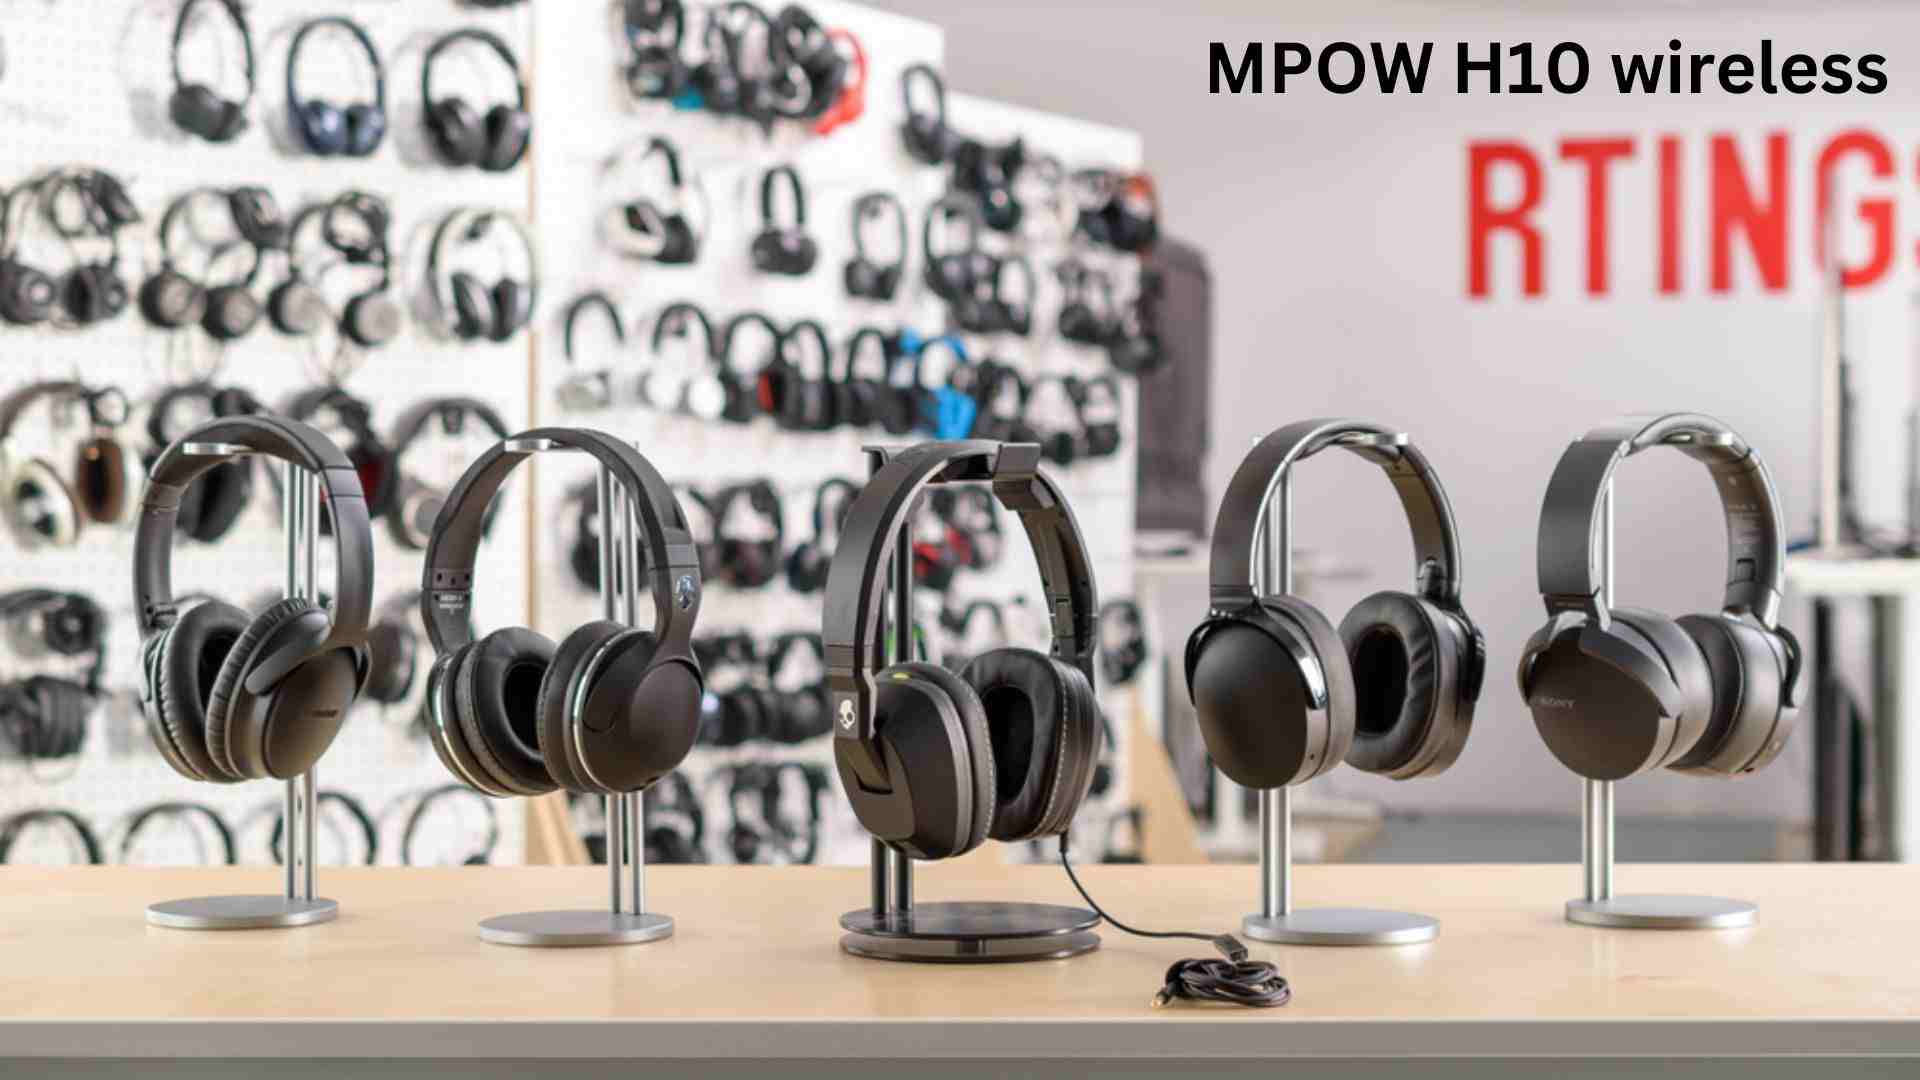 MPOW H10 wireless